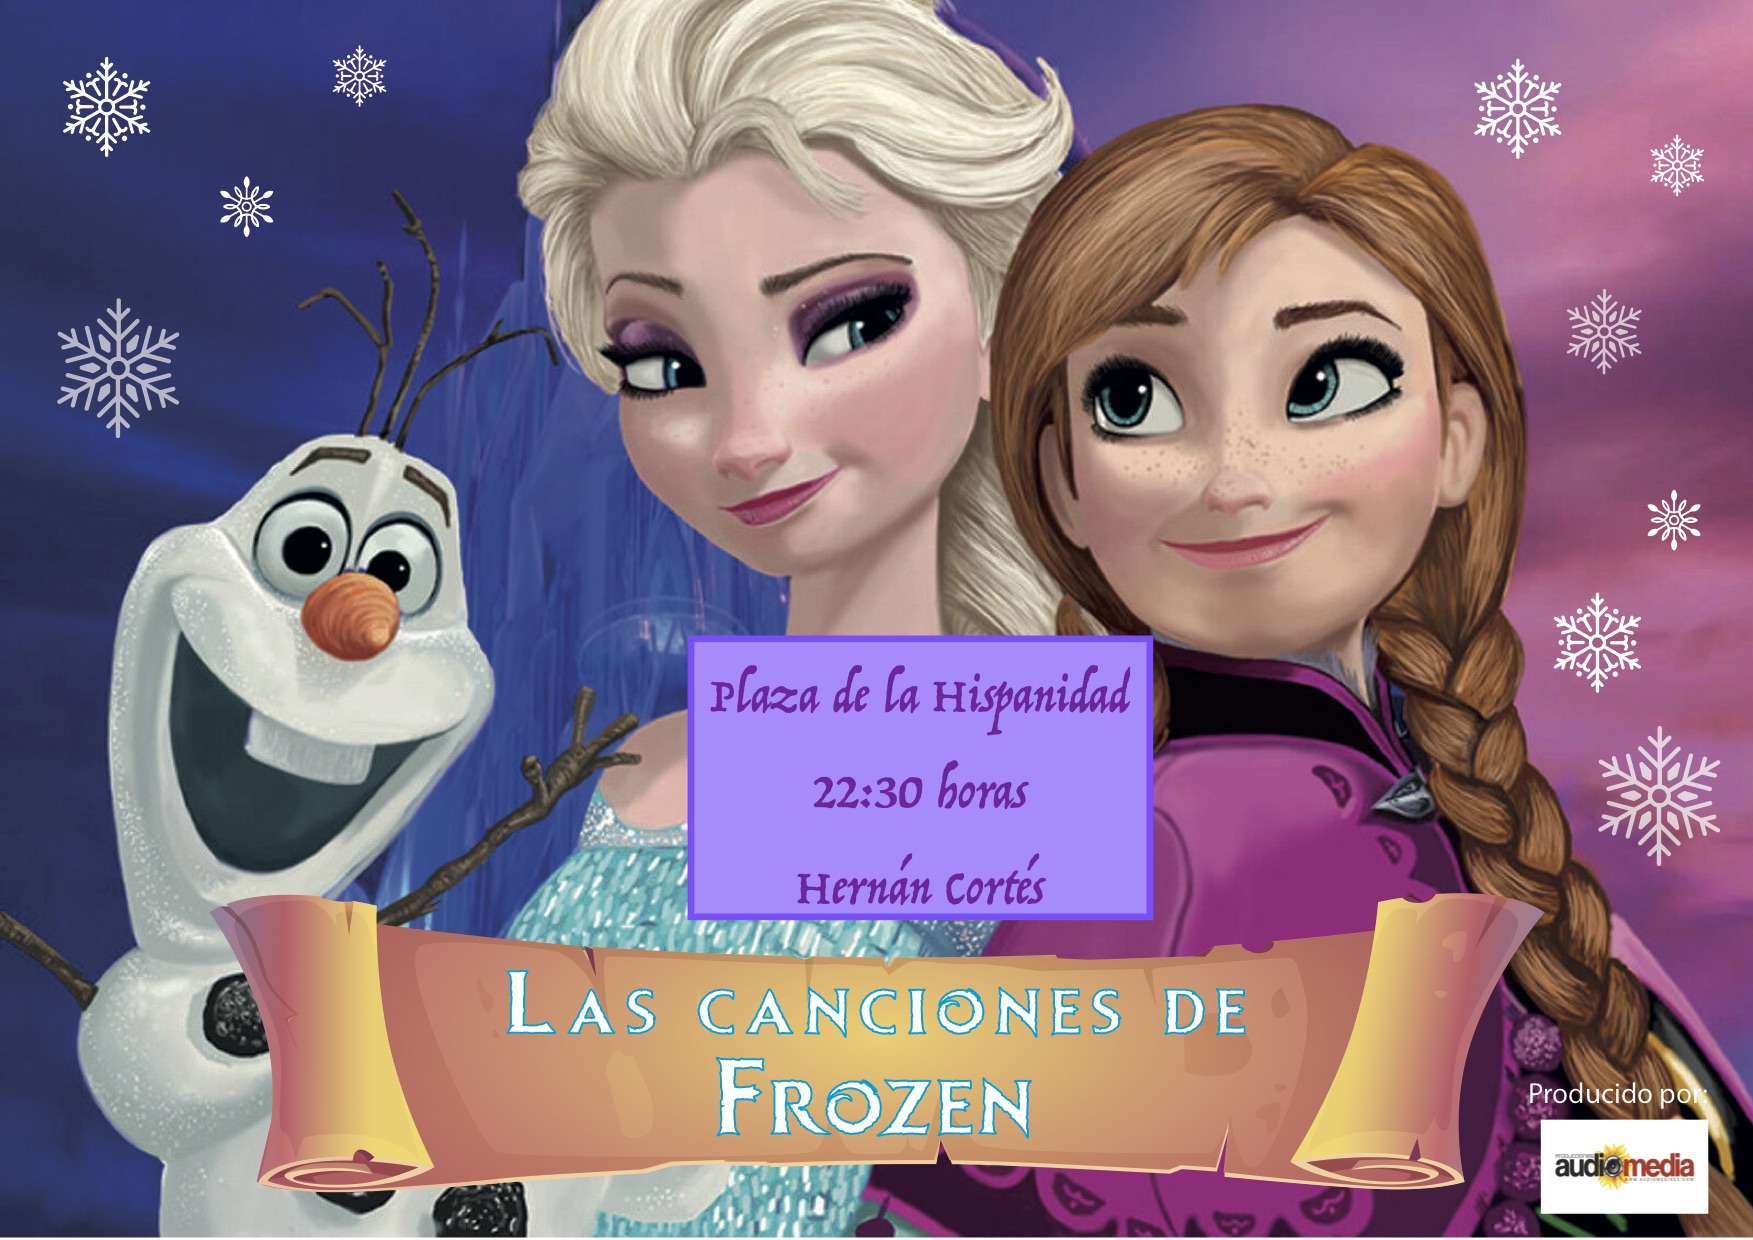 Las canciones de Frozen viajan hasta Hernán Cortés